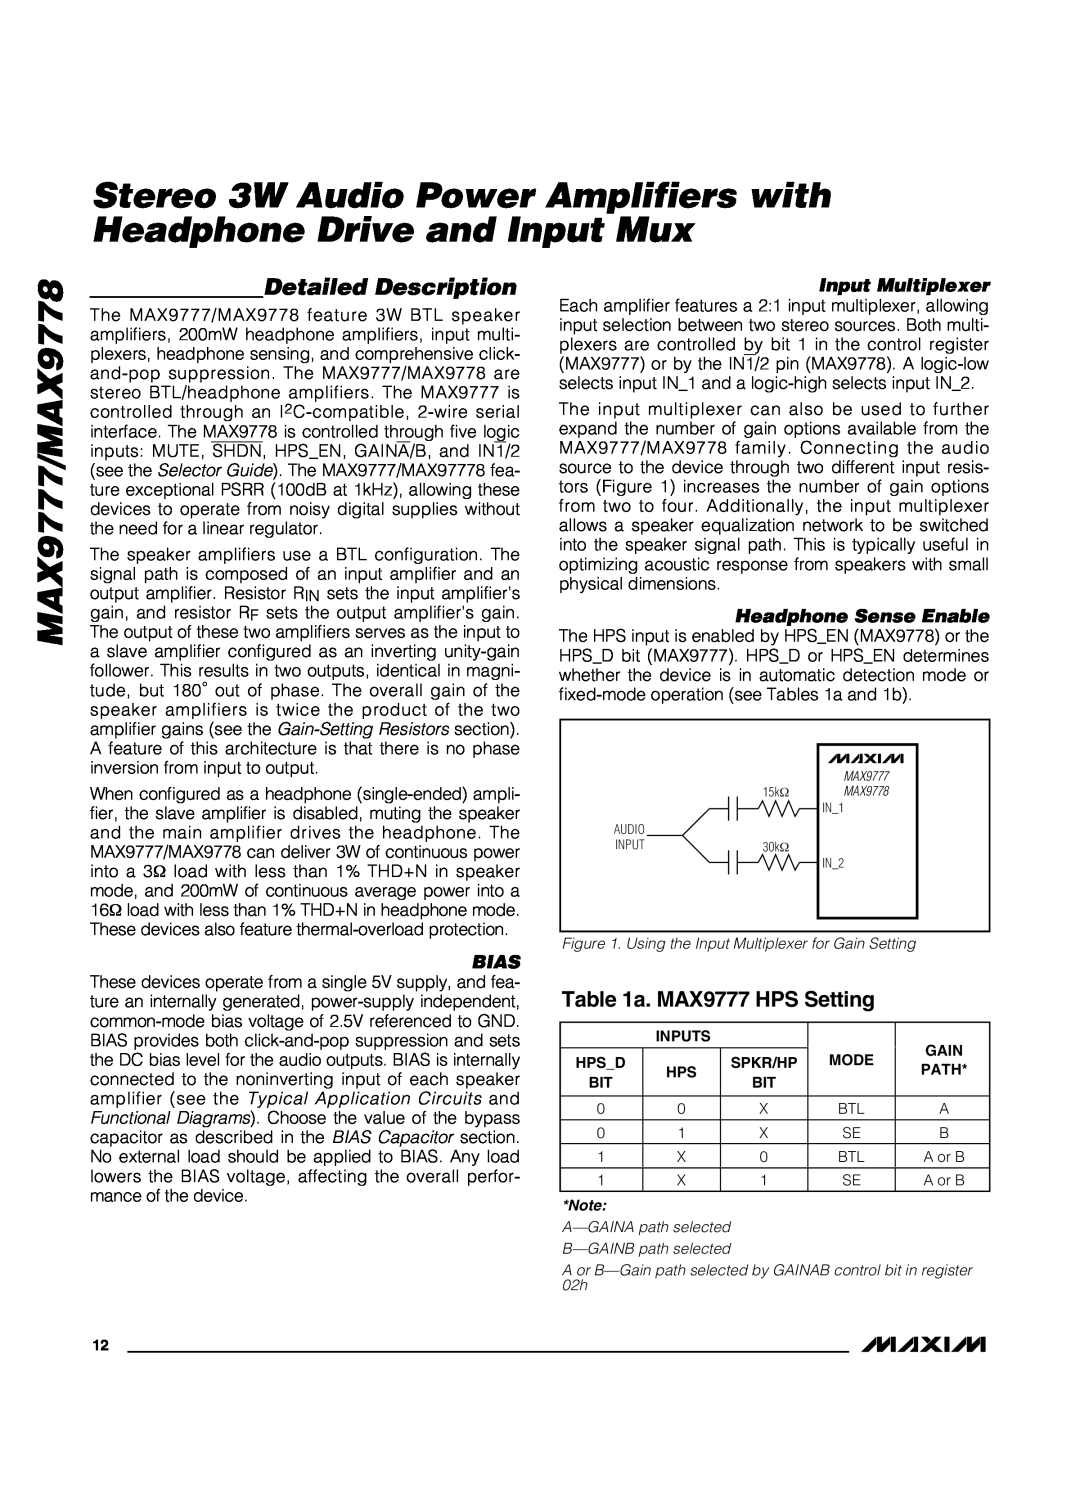 Maxim manual Detailed Description, a. MAX9777 HPS Setting, MAX9777/MAX9778 